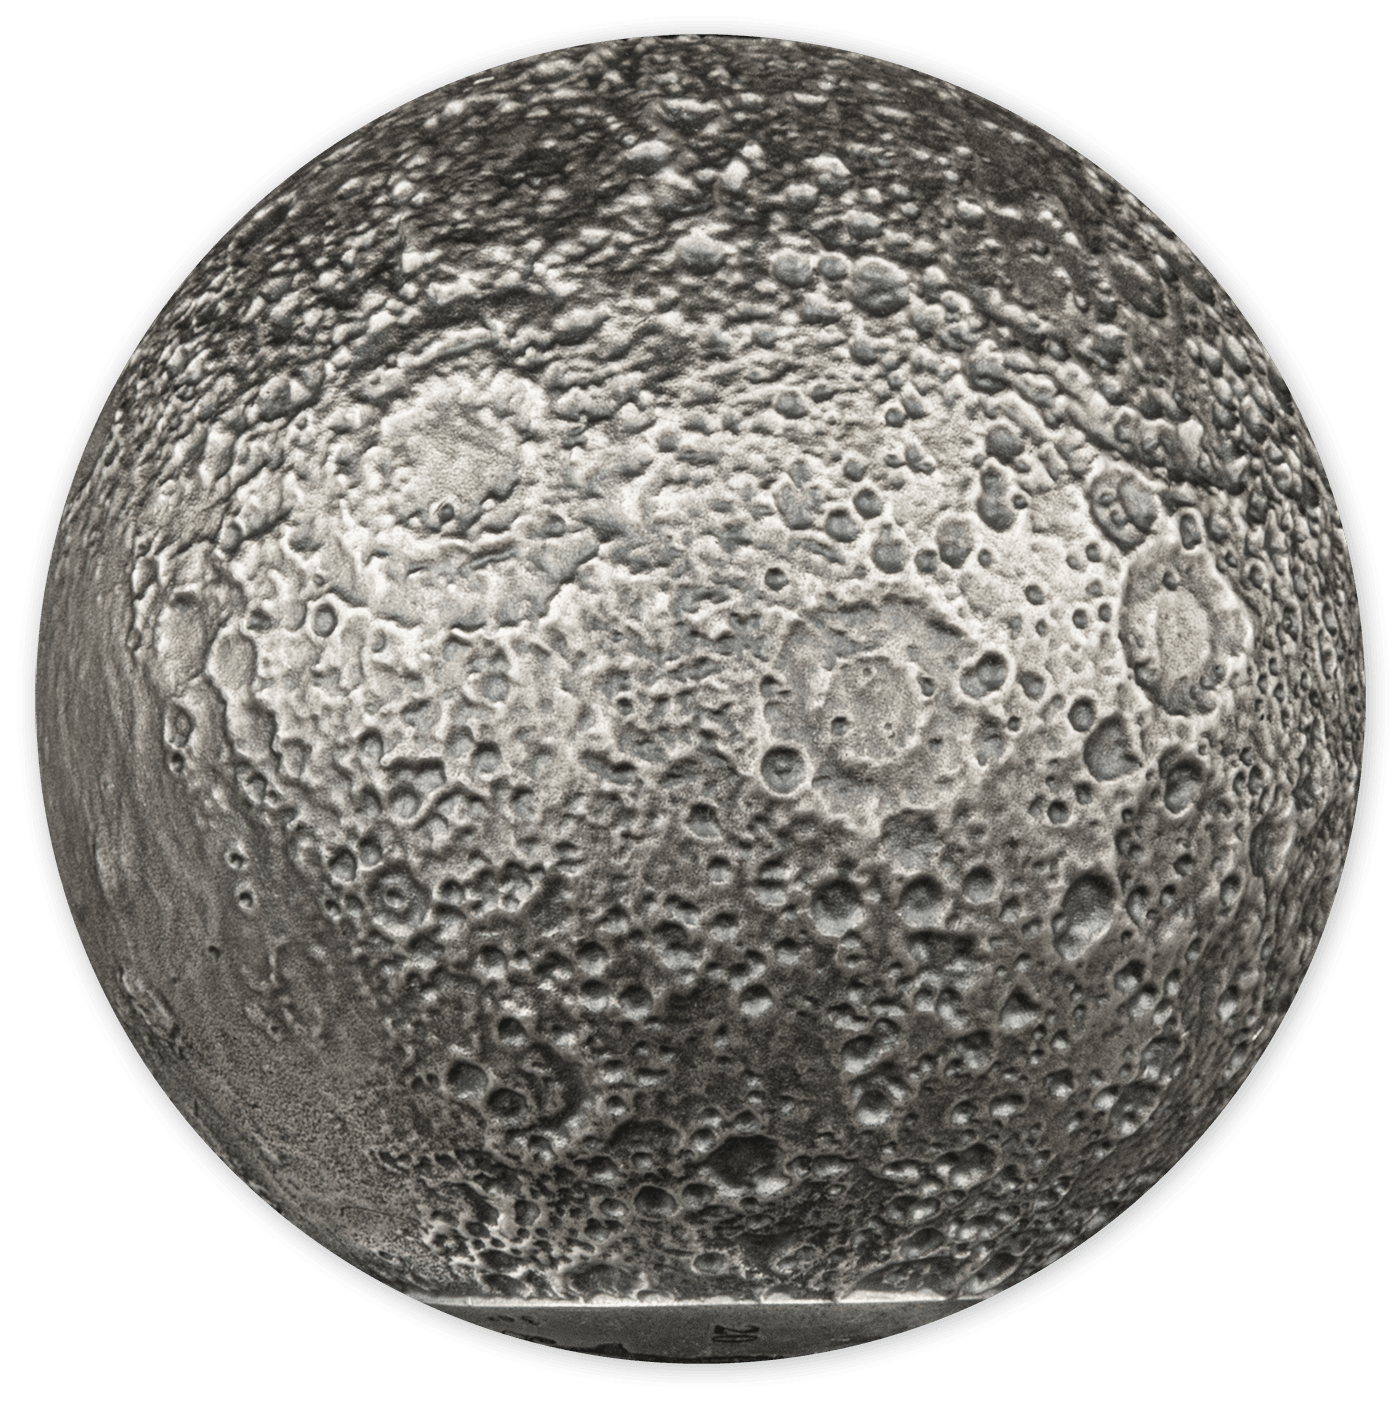 MOON SPHERICAL 3D Planet 3 Oz Silver Coin $5 Barbados 2023 - PARTHAVA COIN